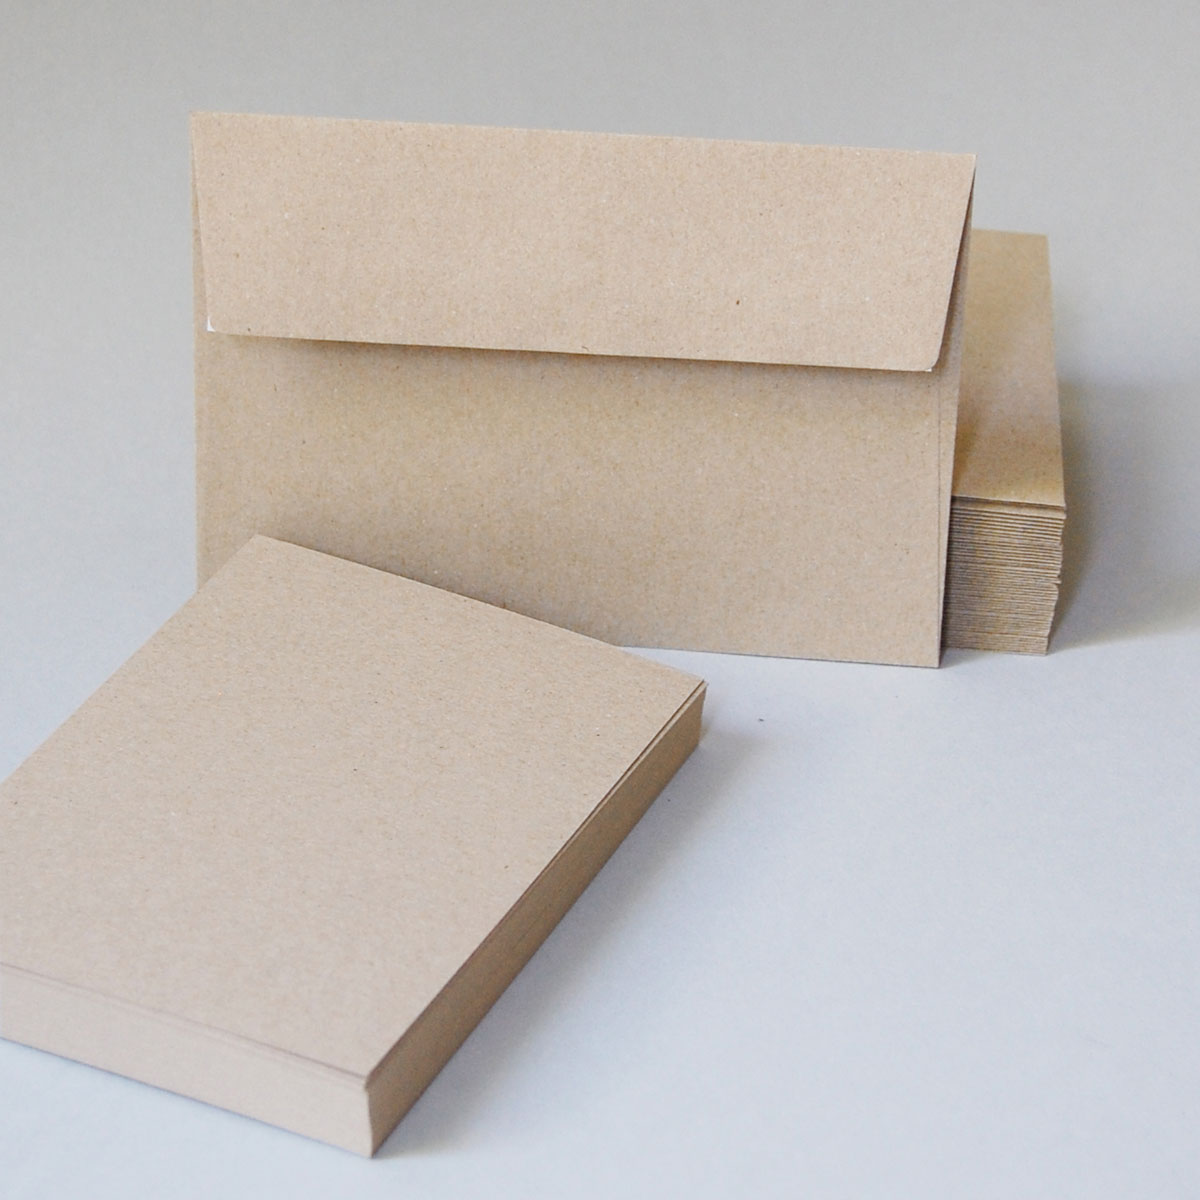 Briefkarten aus sandfarbenem Recycling-Karton, DIN A6 mit passenden Briefumschlägen